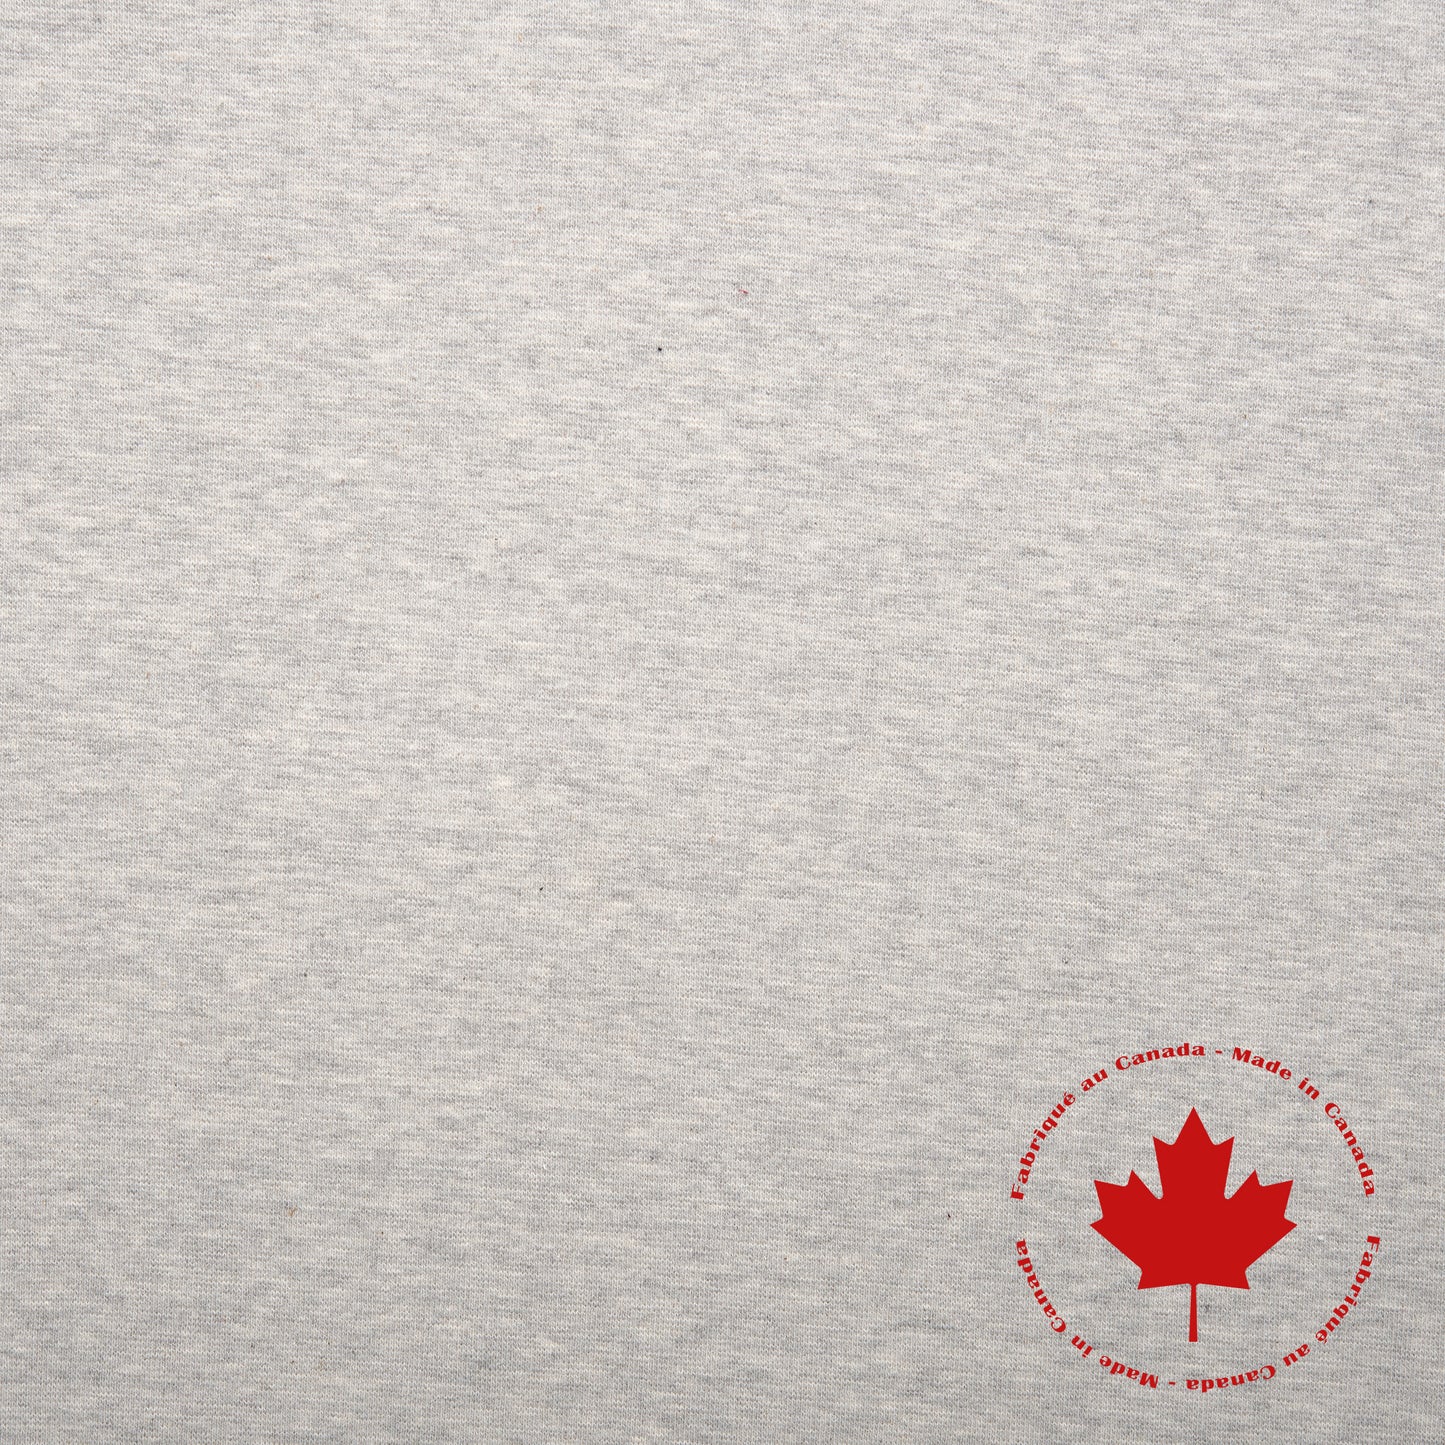 1 x 1 Tubular Rib Knit - Canadian - Gray